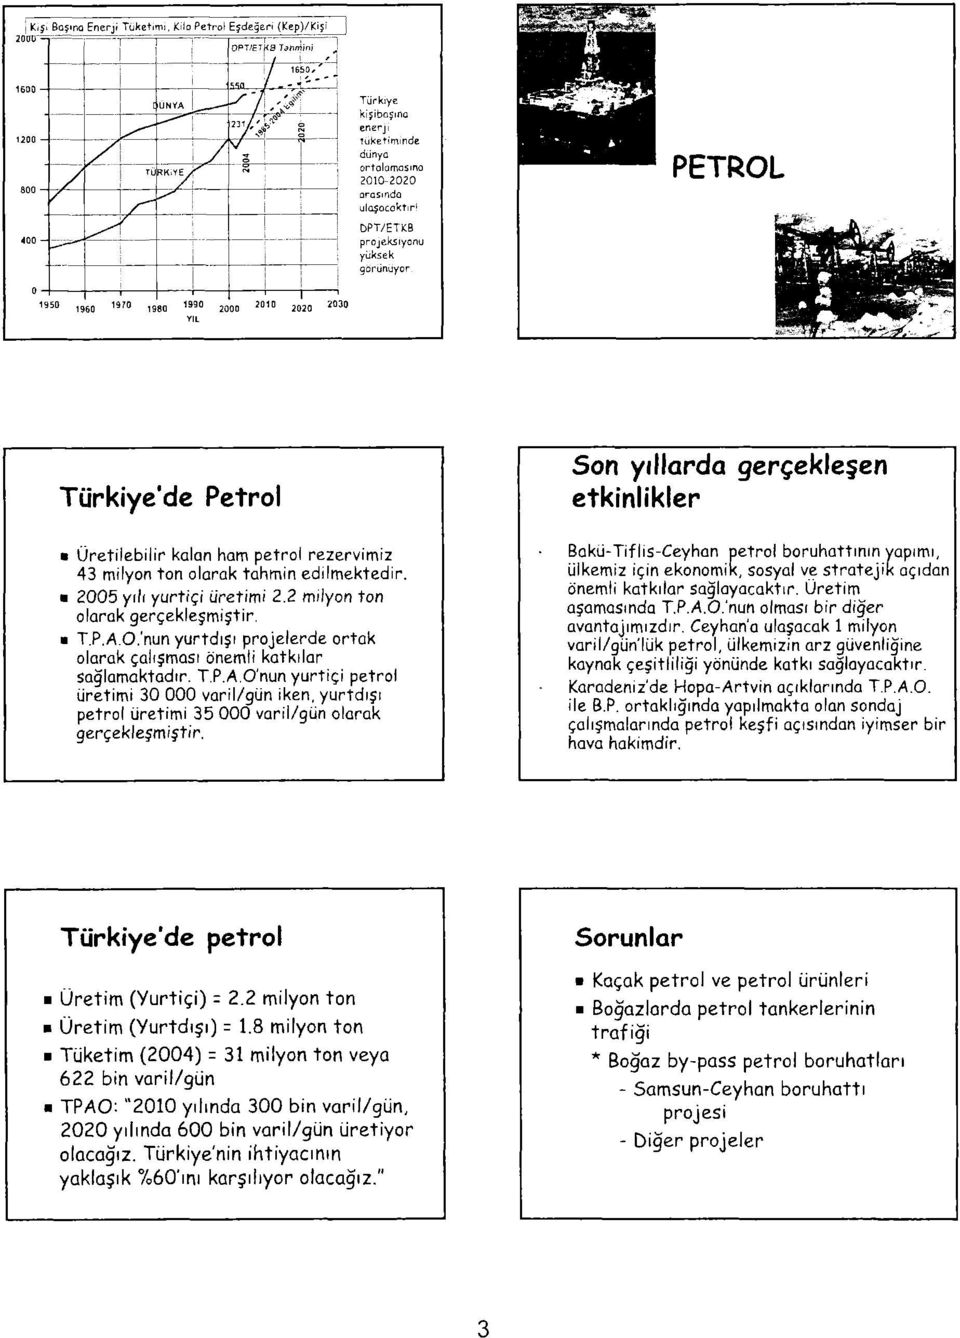 !! arasında i i ulaşacavtır' I DPT/ETKB 1 1 projeksiyonu i yüksek PETROL 1950 1970 1990 1 9 6 0 1 9 8 0 2Q 00 YIL J01 2020 203 Türkiye'de Petrol Üretilebilir kalan ham petrol rezervimiz 43 milyon ton